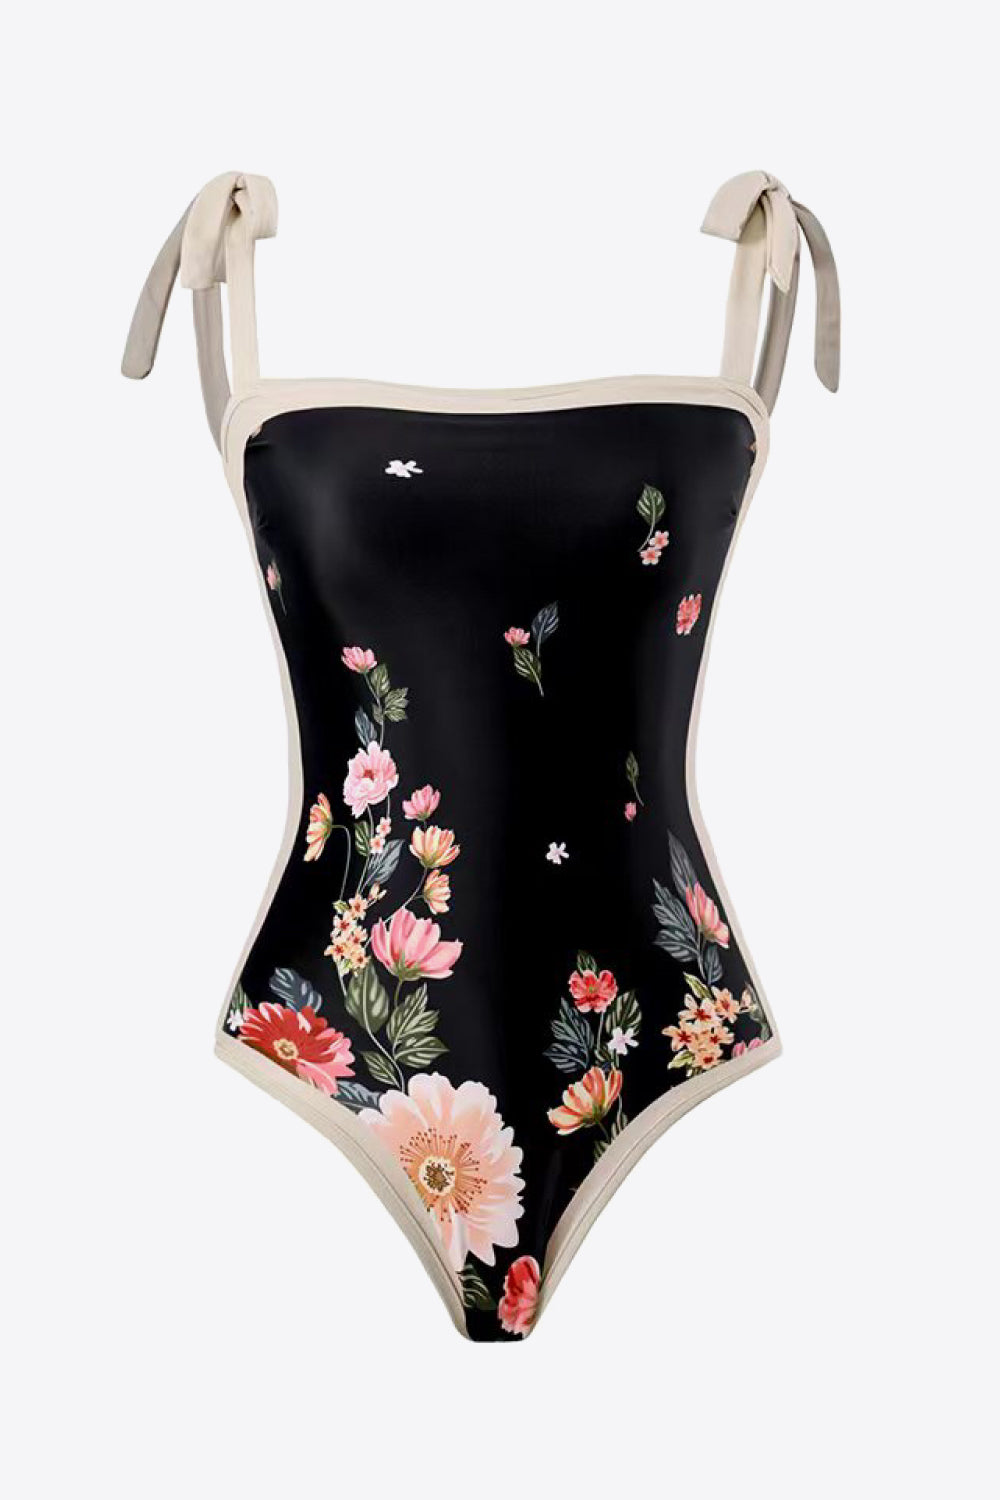 Floral Tie-Shoulder Two-Piece Swim Set - The Fashion Unicorn